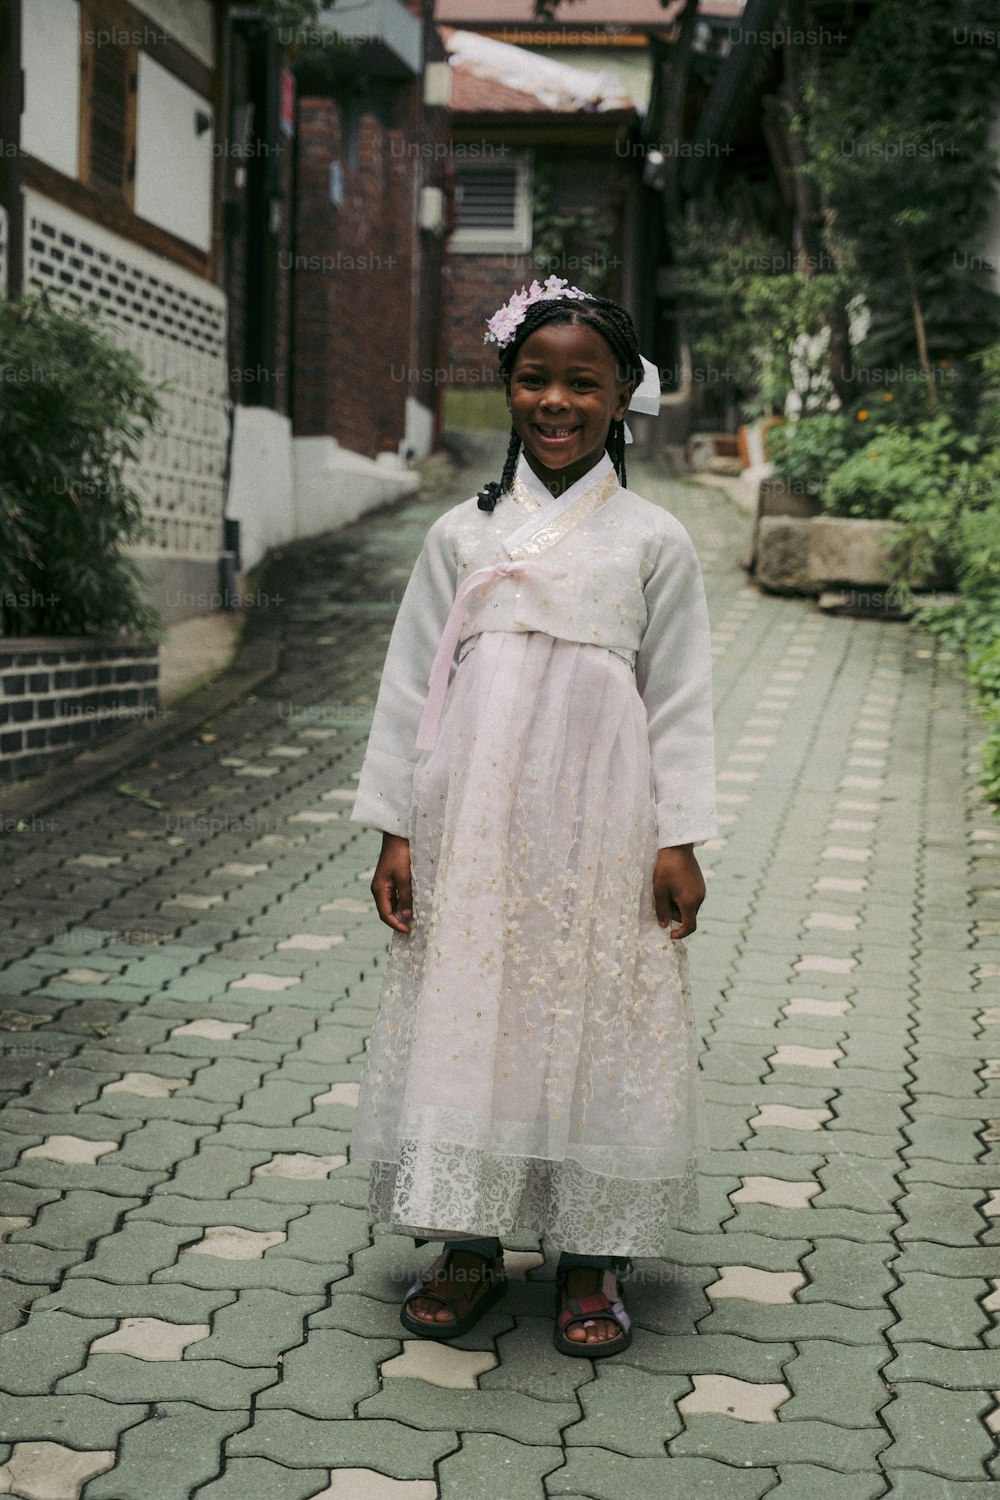 Una joven con un vestido blanco parada en una calle empedrada